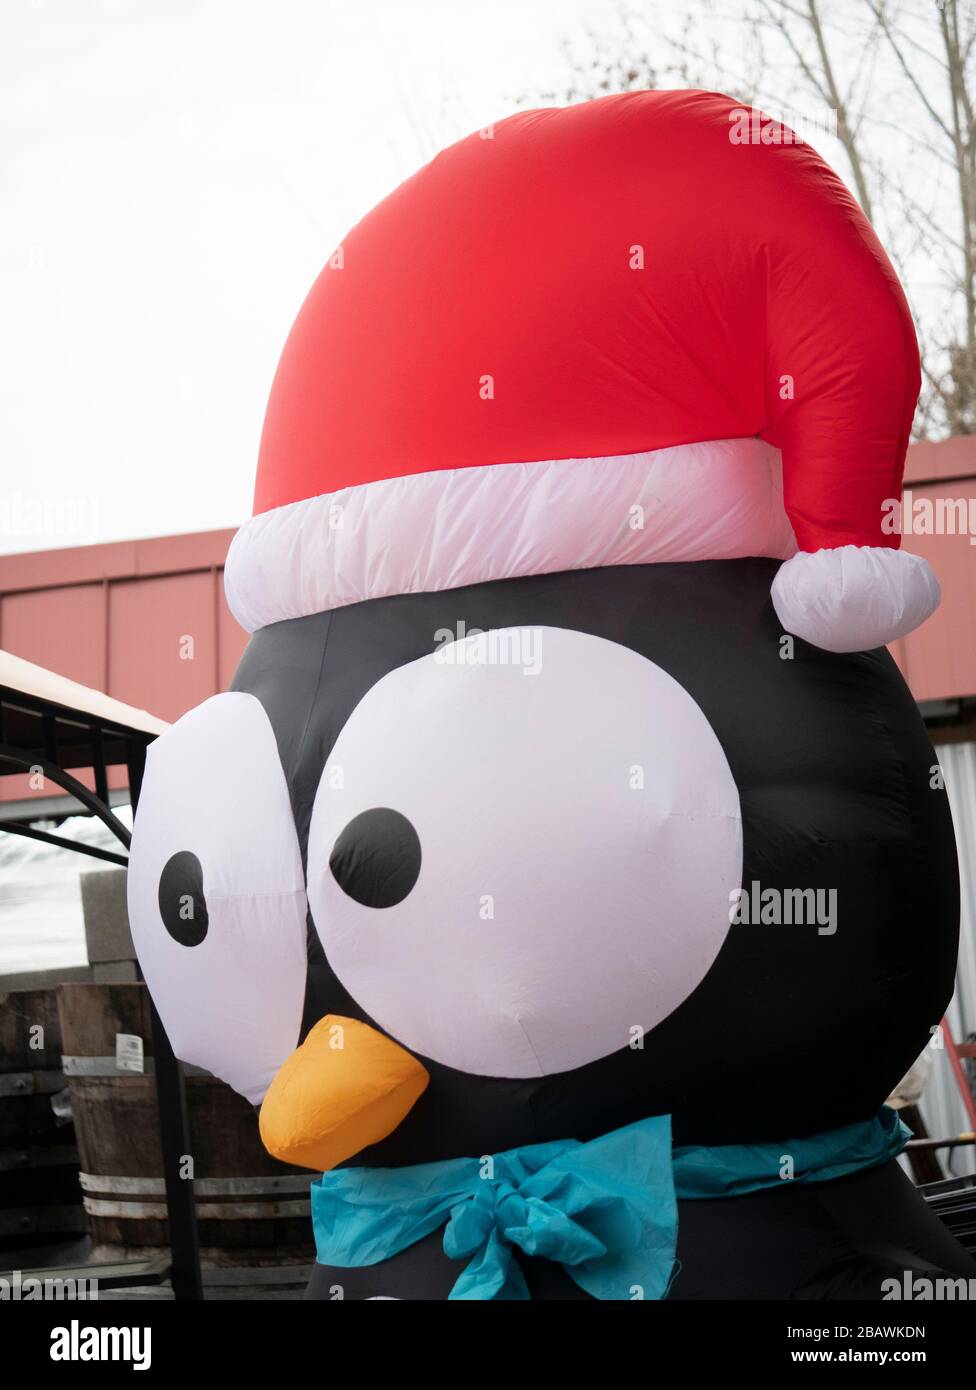 Kunststoff aufblasbarer Pinguin mit roten hatte in einem Weihnachtsdisplay  Stockfotografie - Alamy